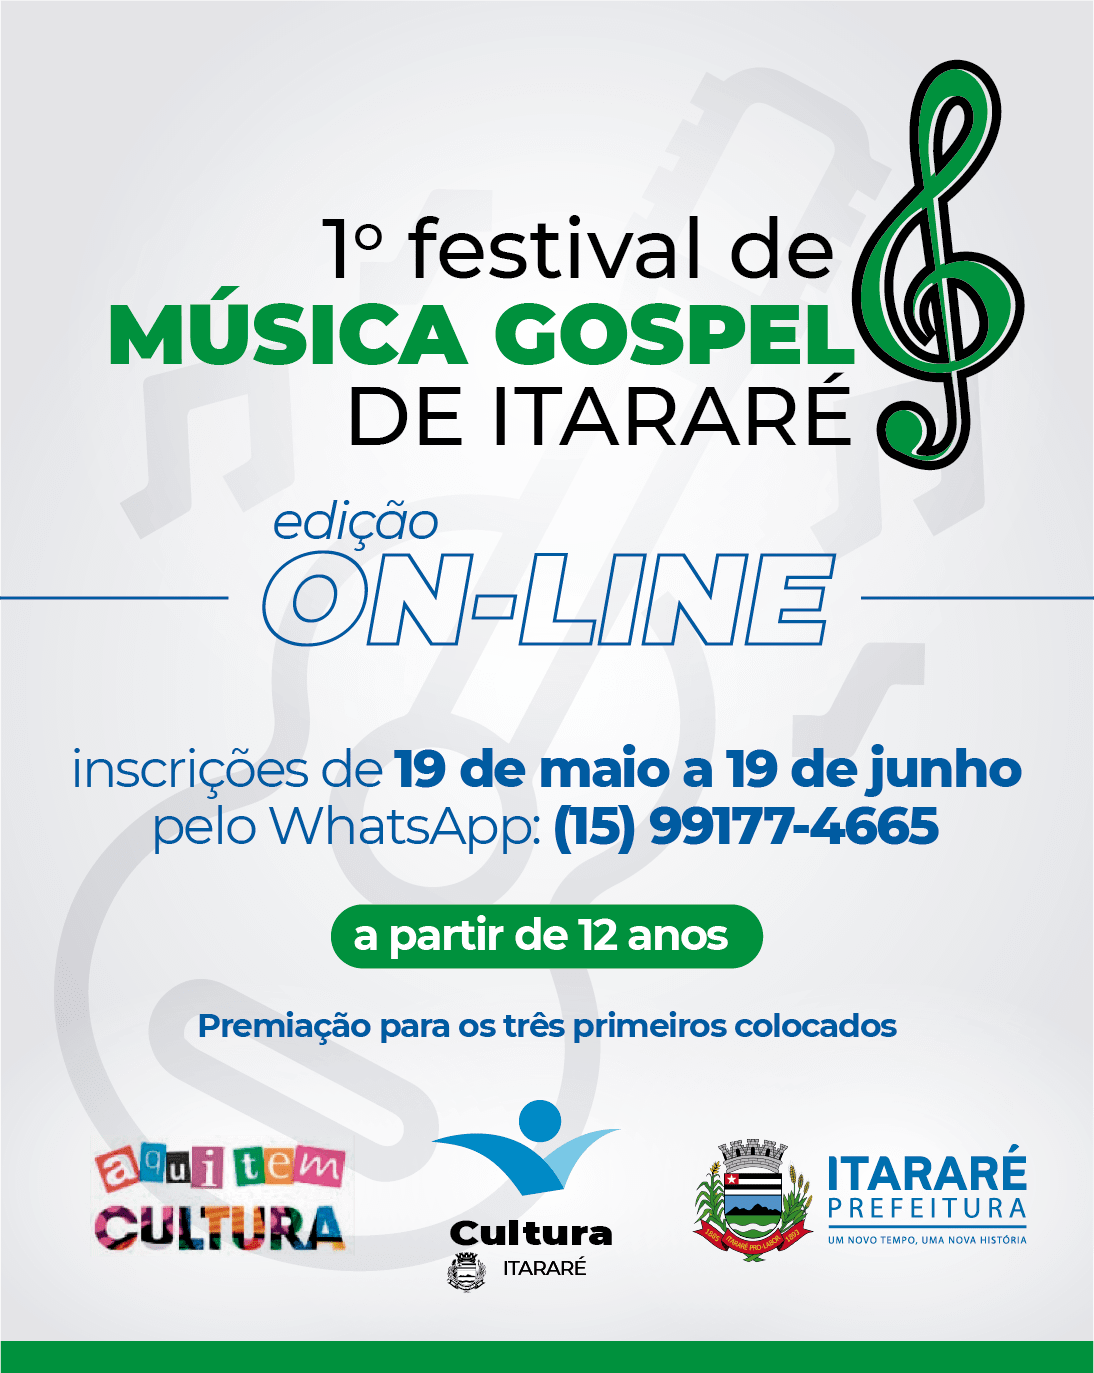 Prefeitura de Itararé (SP) promoverá 1º Festival de Música Gospel